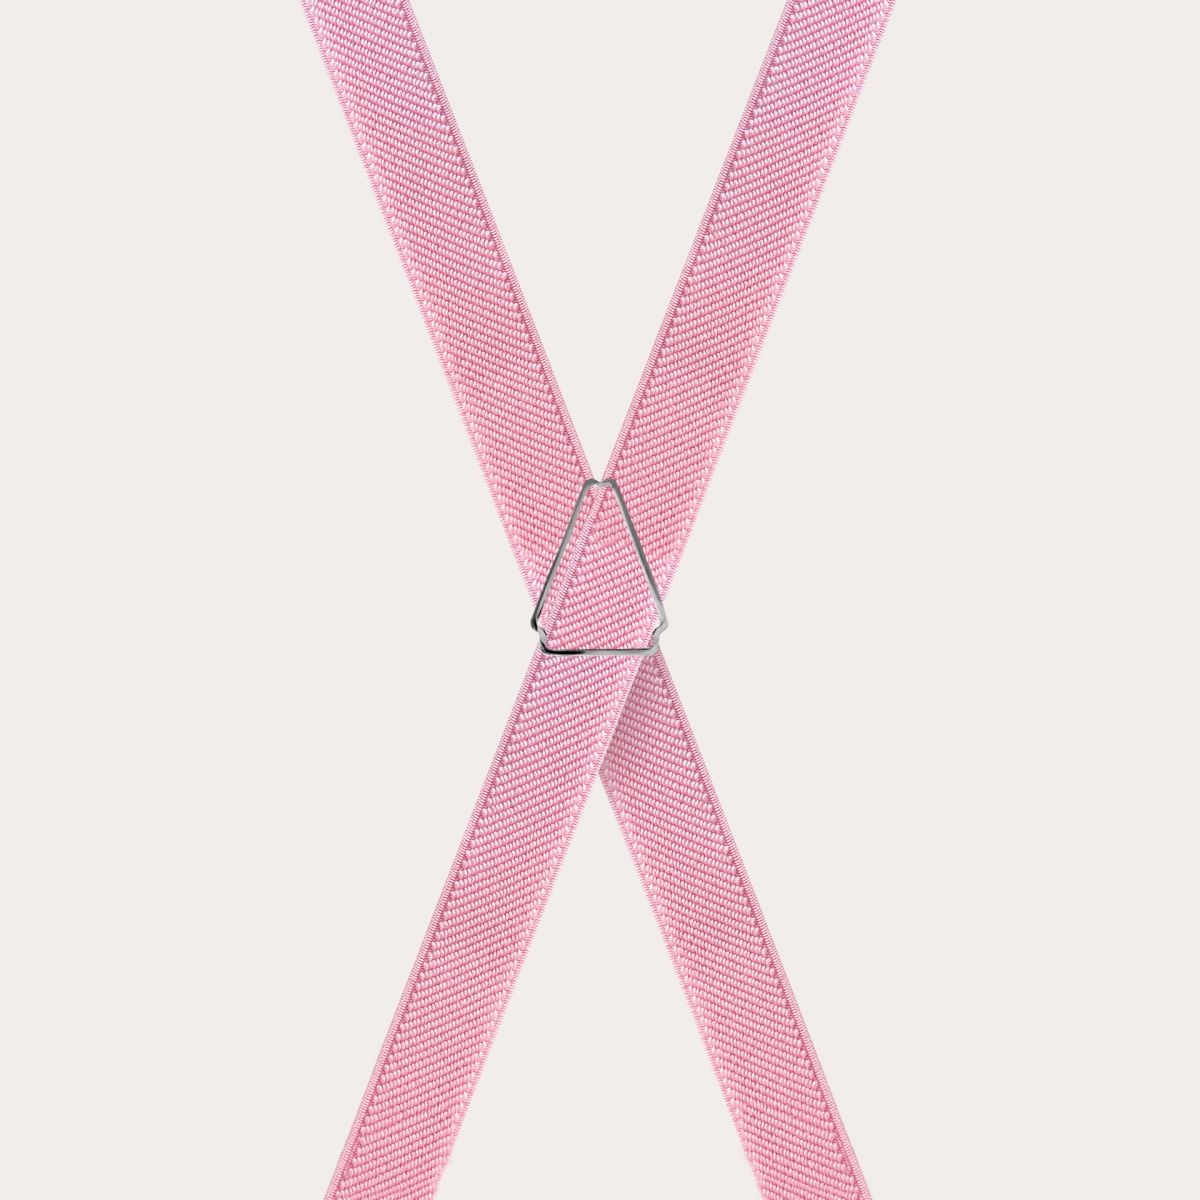 BRUCLE Hosenträger in X-Form für Jungen und Mädchen, pastellrosa